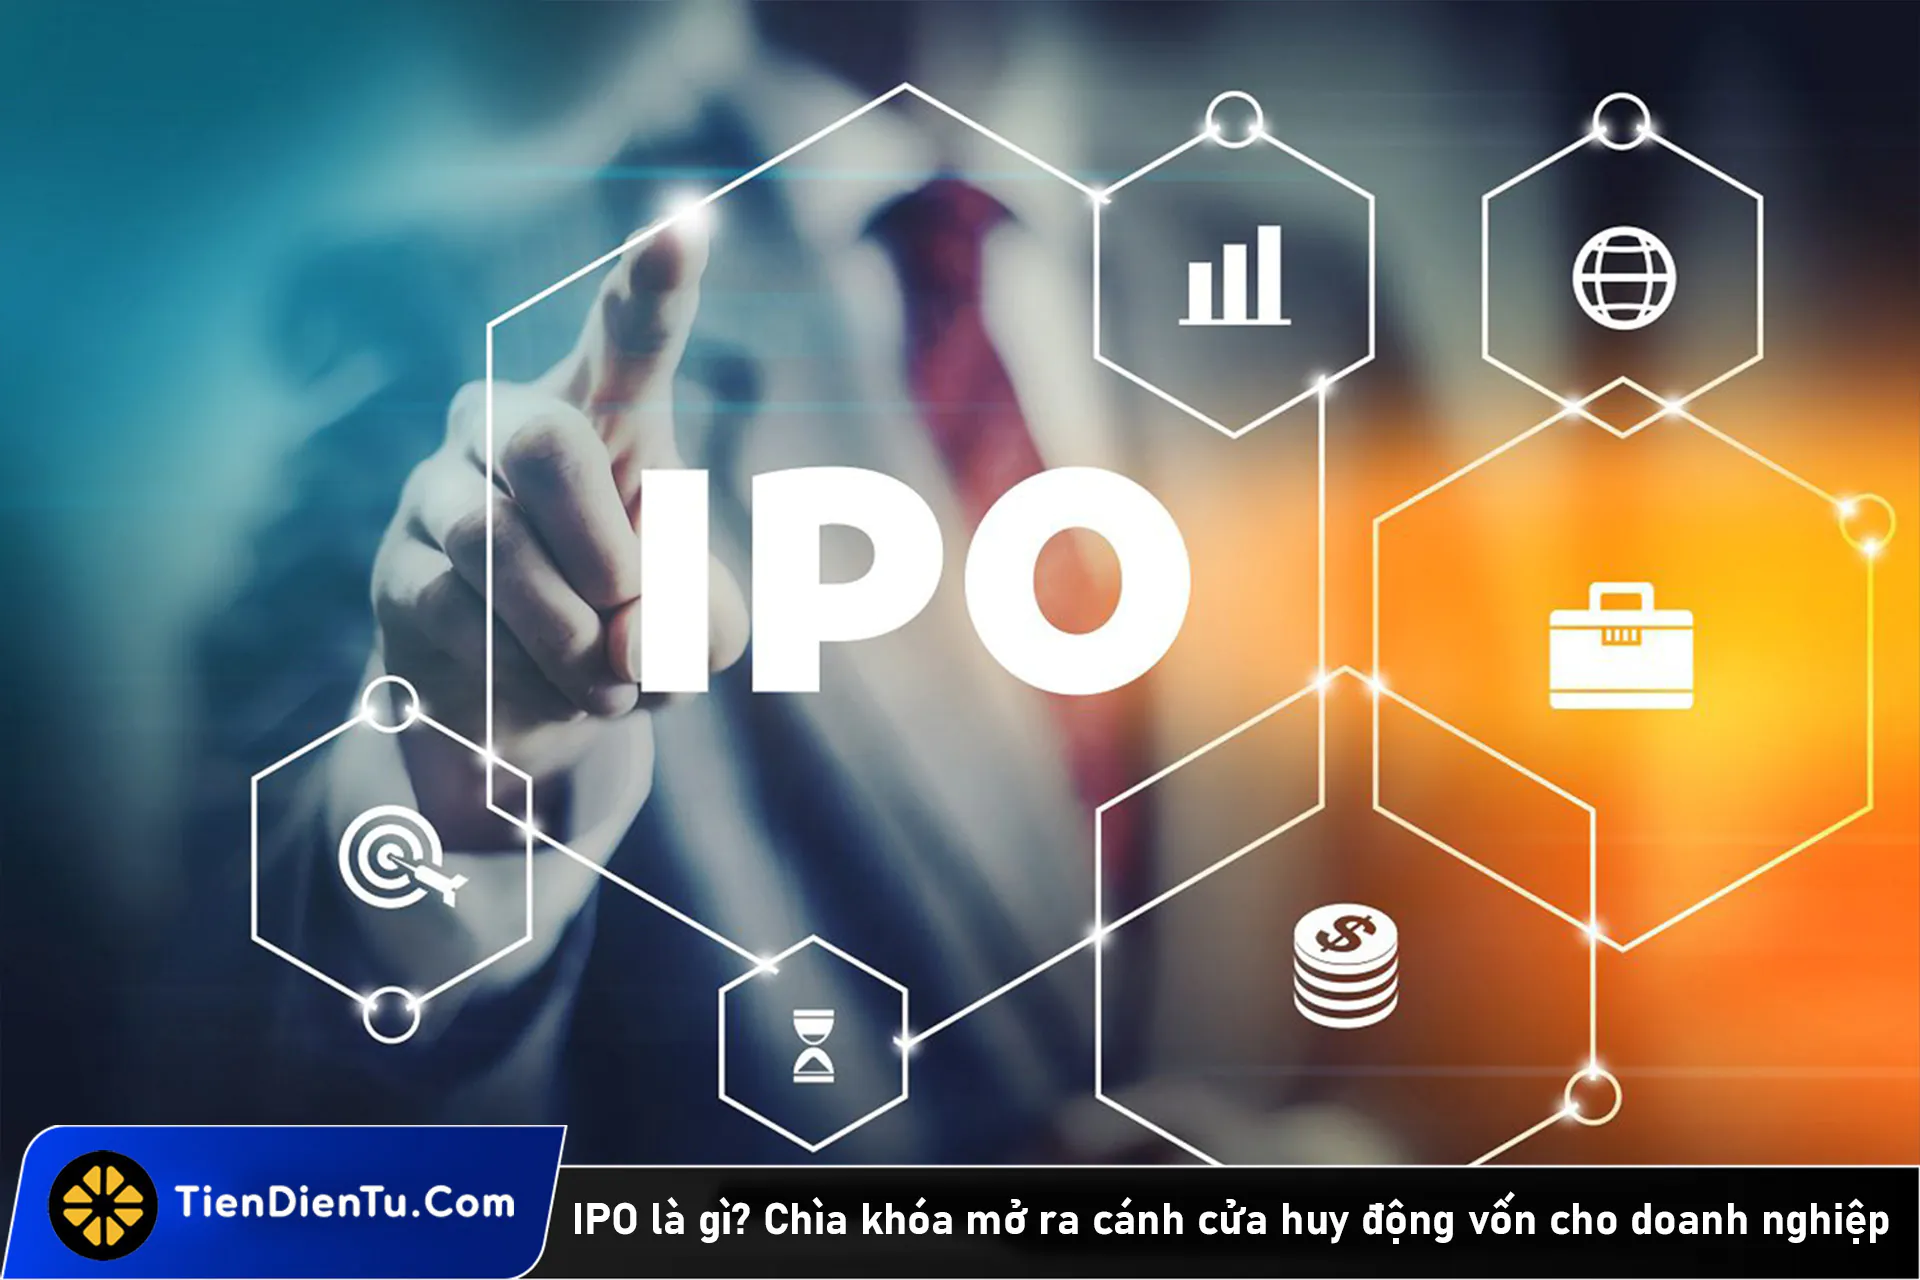 IPO là gì? Tổng hợp đầy đủ các thông tin về IPO cho doanh nghiệp